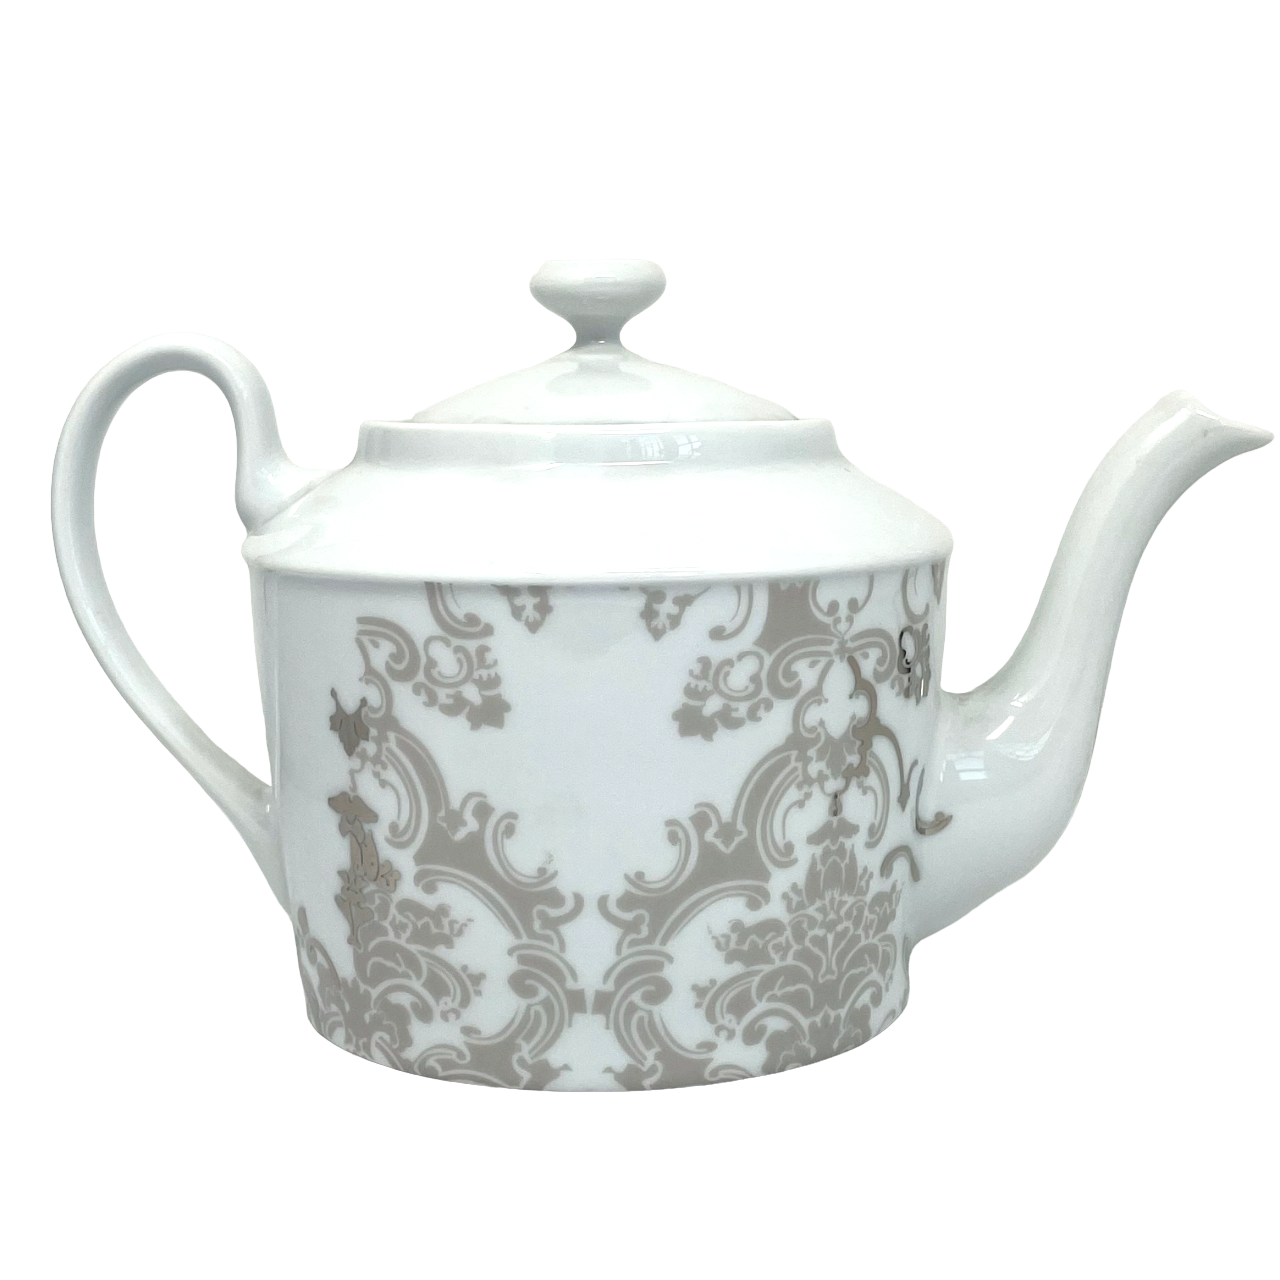 Boudoir - Teapot 1.2 litre